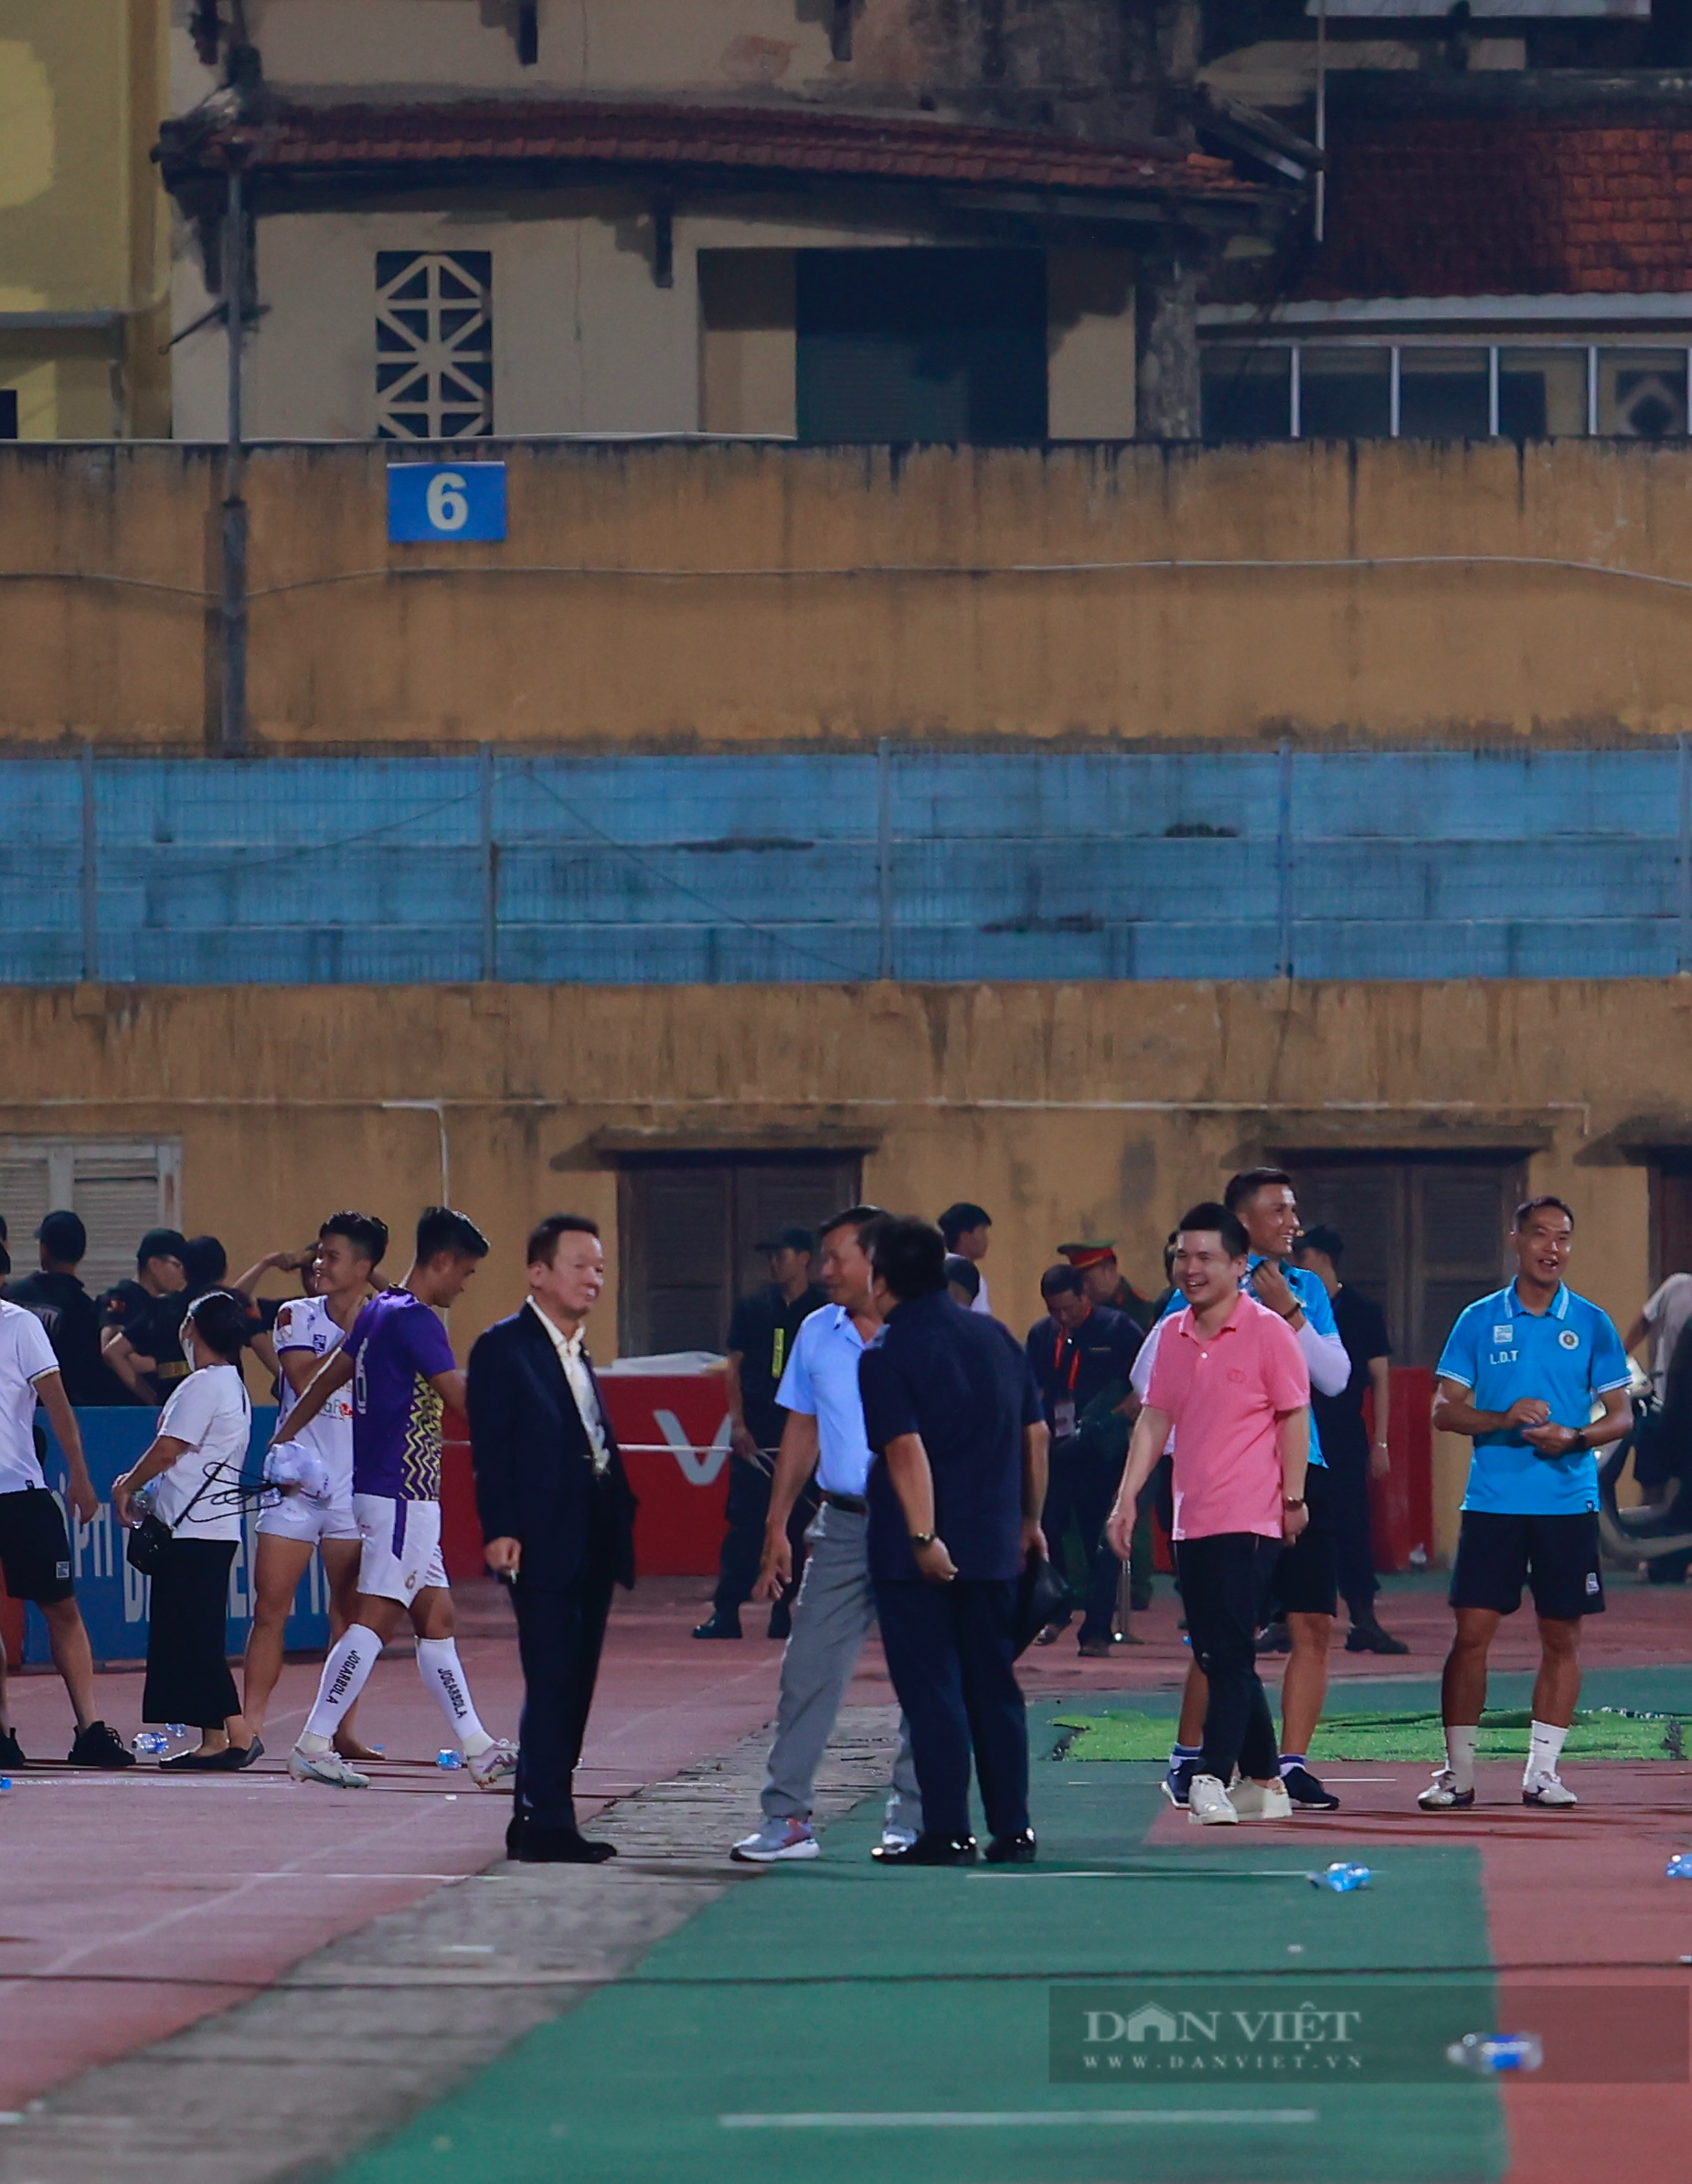 Đình Trọng cùng vợ đến sân theo dõi Bình Định FC thi đấu - Ảnh 8.